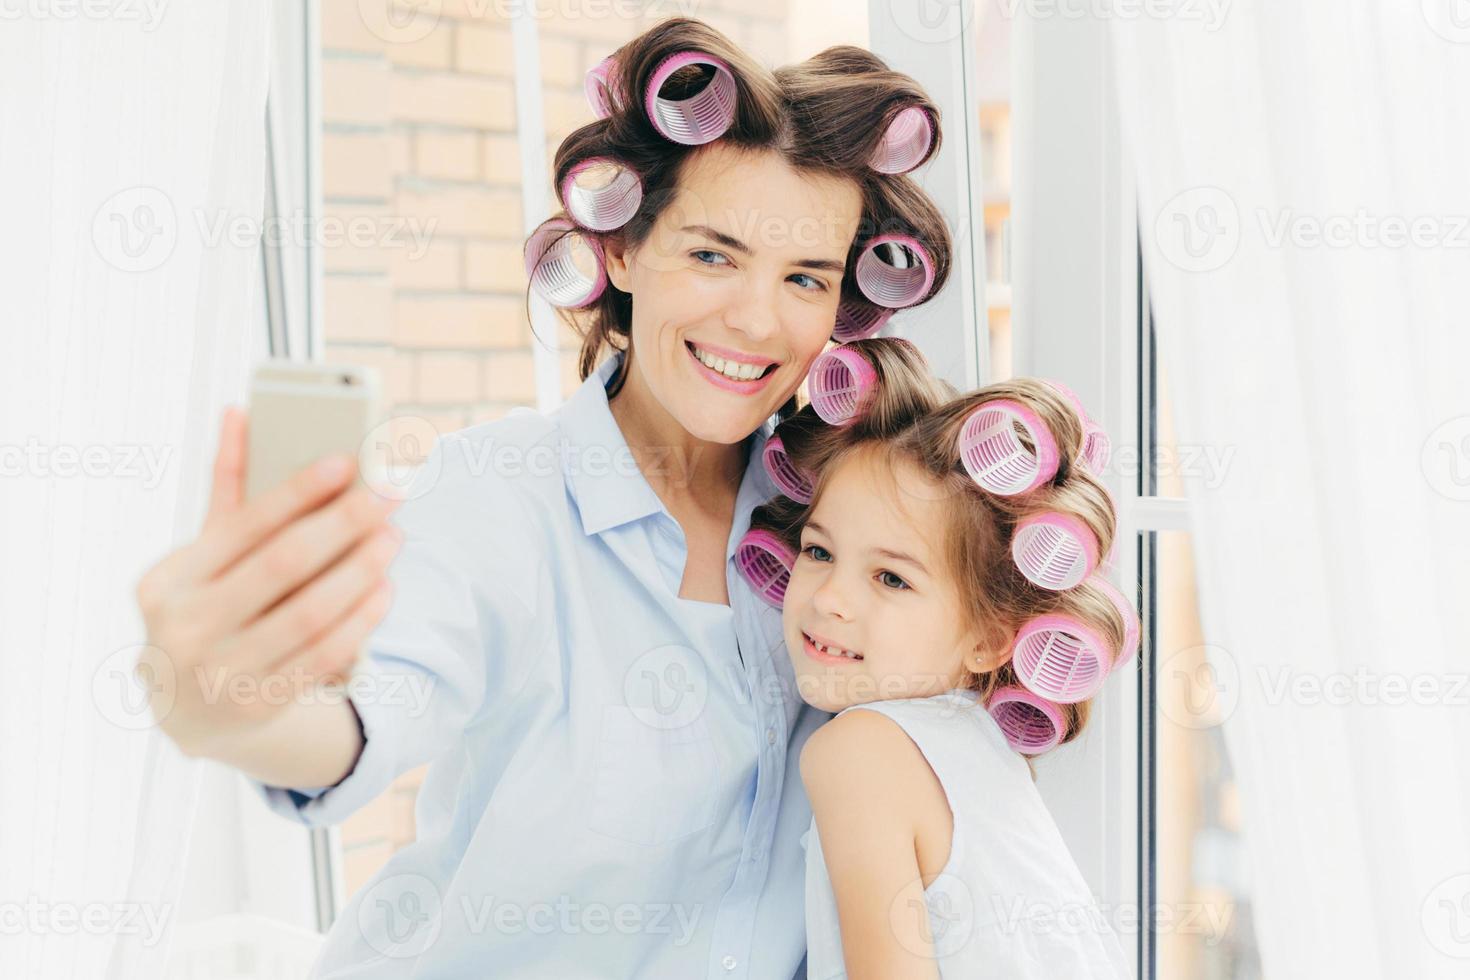 gelukkige vrouwelijke moeder en haar kleine kind met krulspelden op hoofd, poseren voor het maken van selfie, moderne smartphone gebruiken, bij het raam staan, voorbereiden op vakantie. gelukkige familie, technologie, lifestyle concept foto